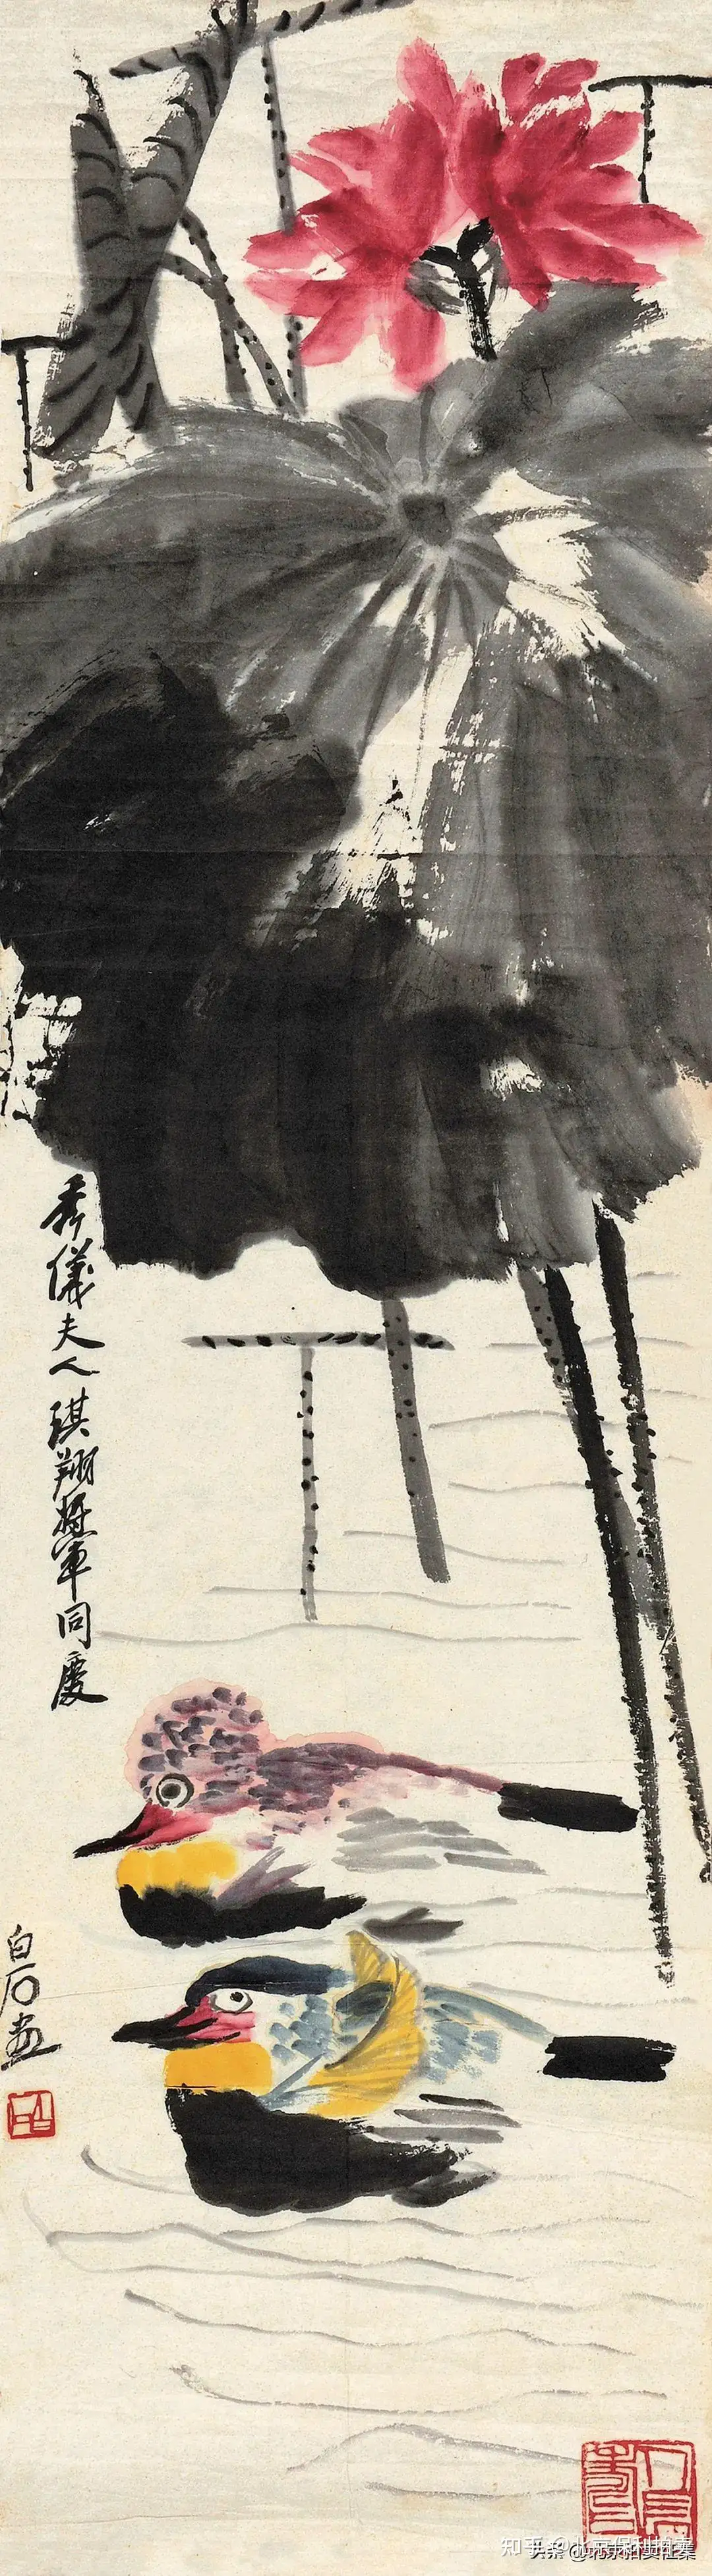 買収書法画 超美品 古賞物 中国時代美術 掛軸